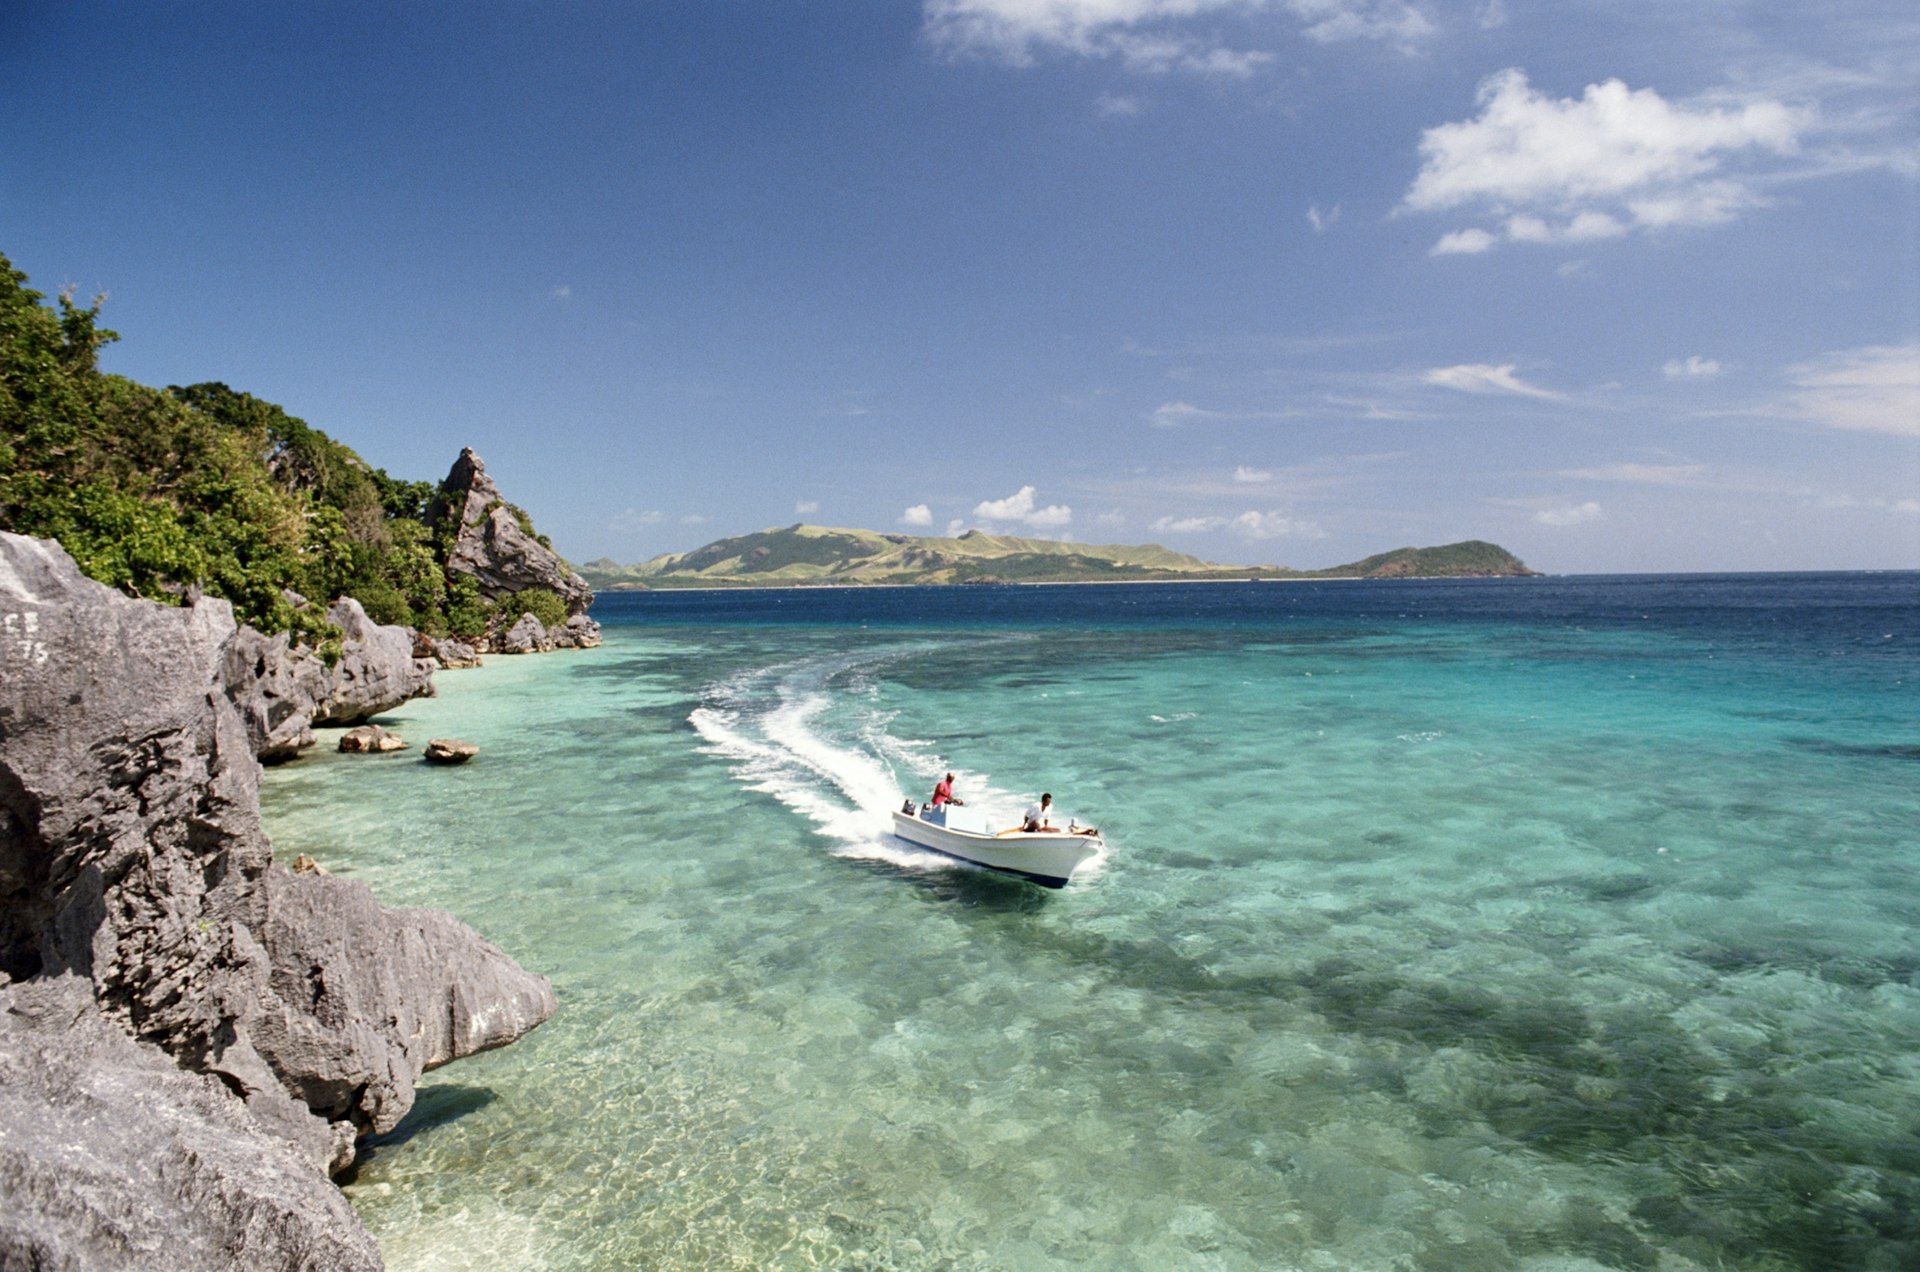 A speedboat cruises through the shallows near an island